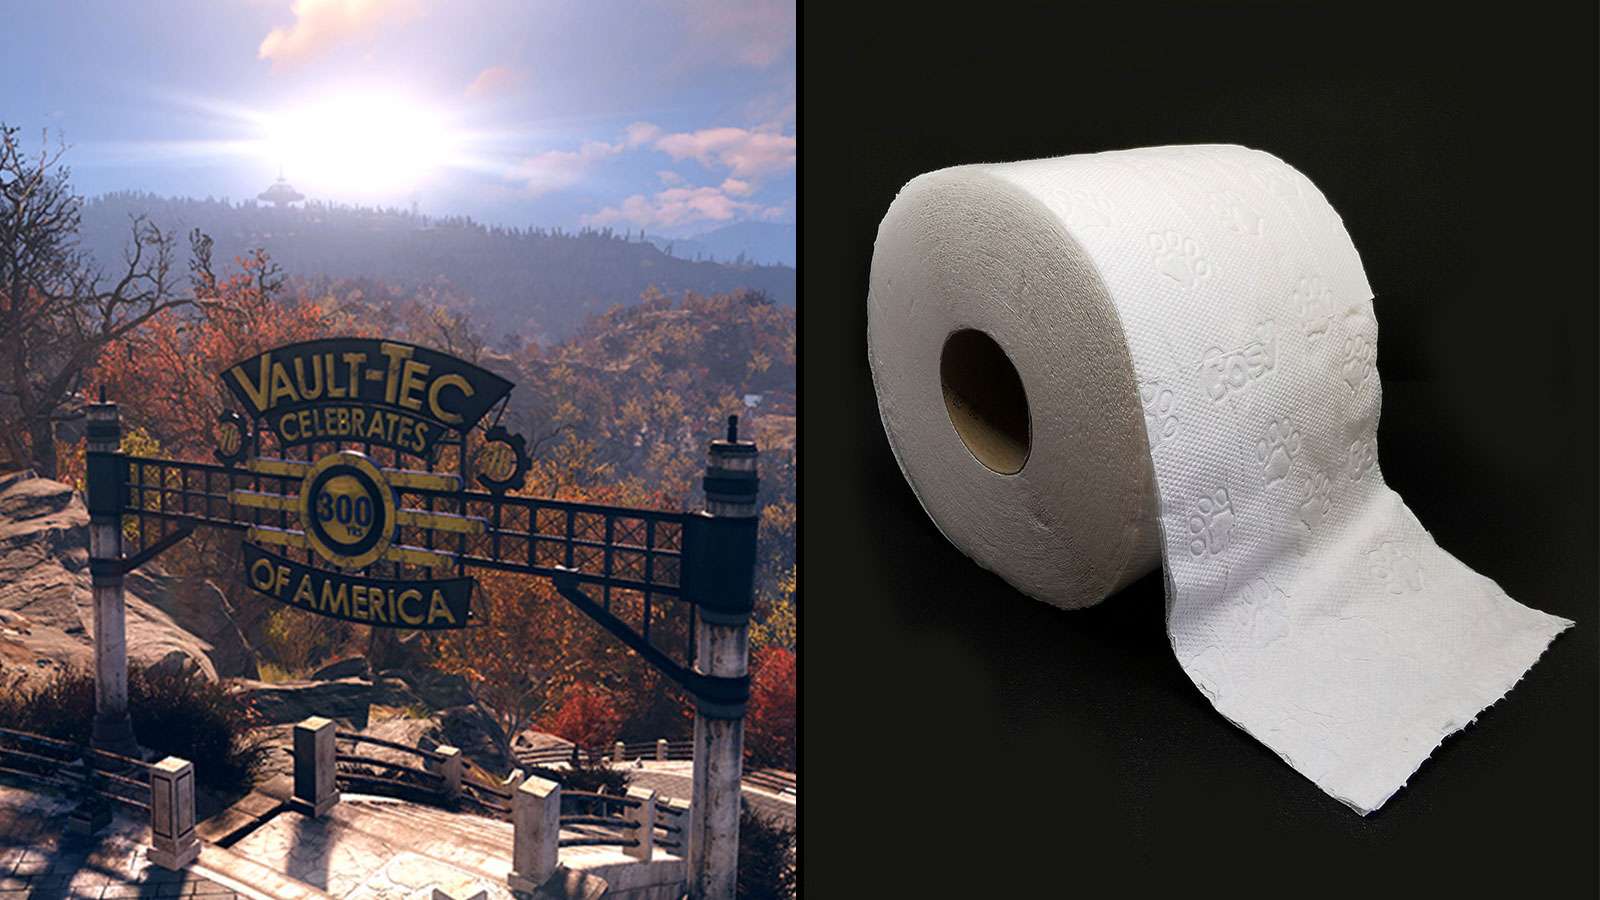 Le papier toilette est devenu un objet assez prisé sur Fallout 76